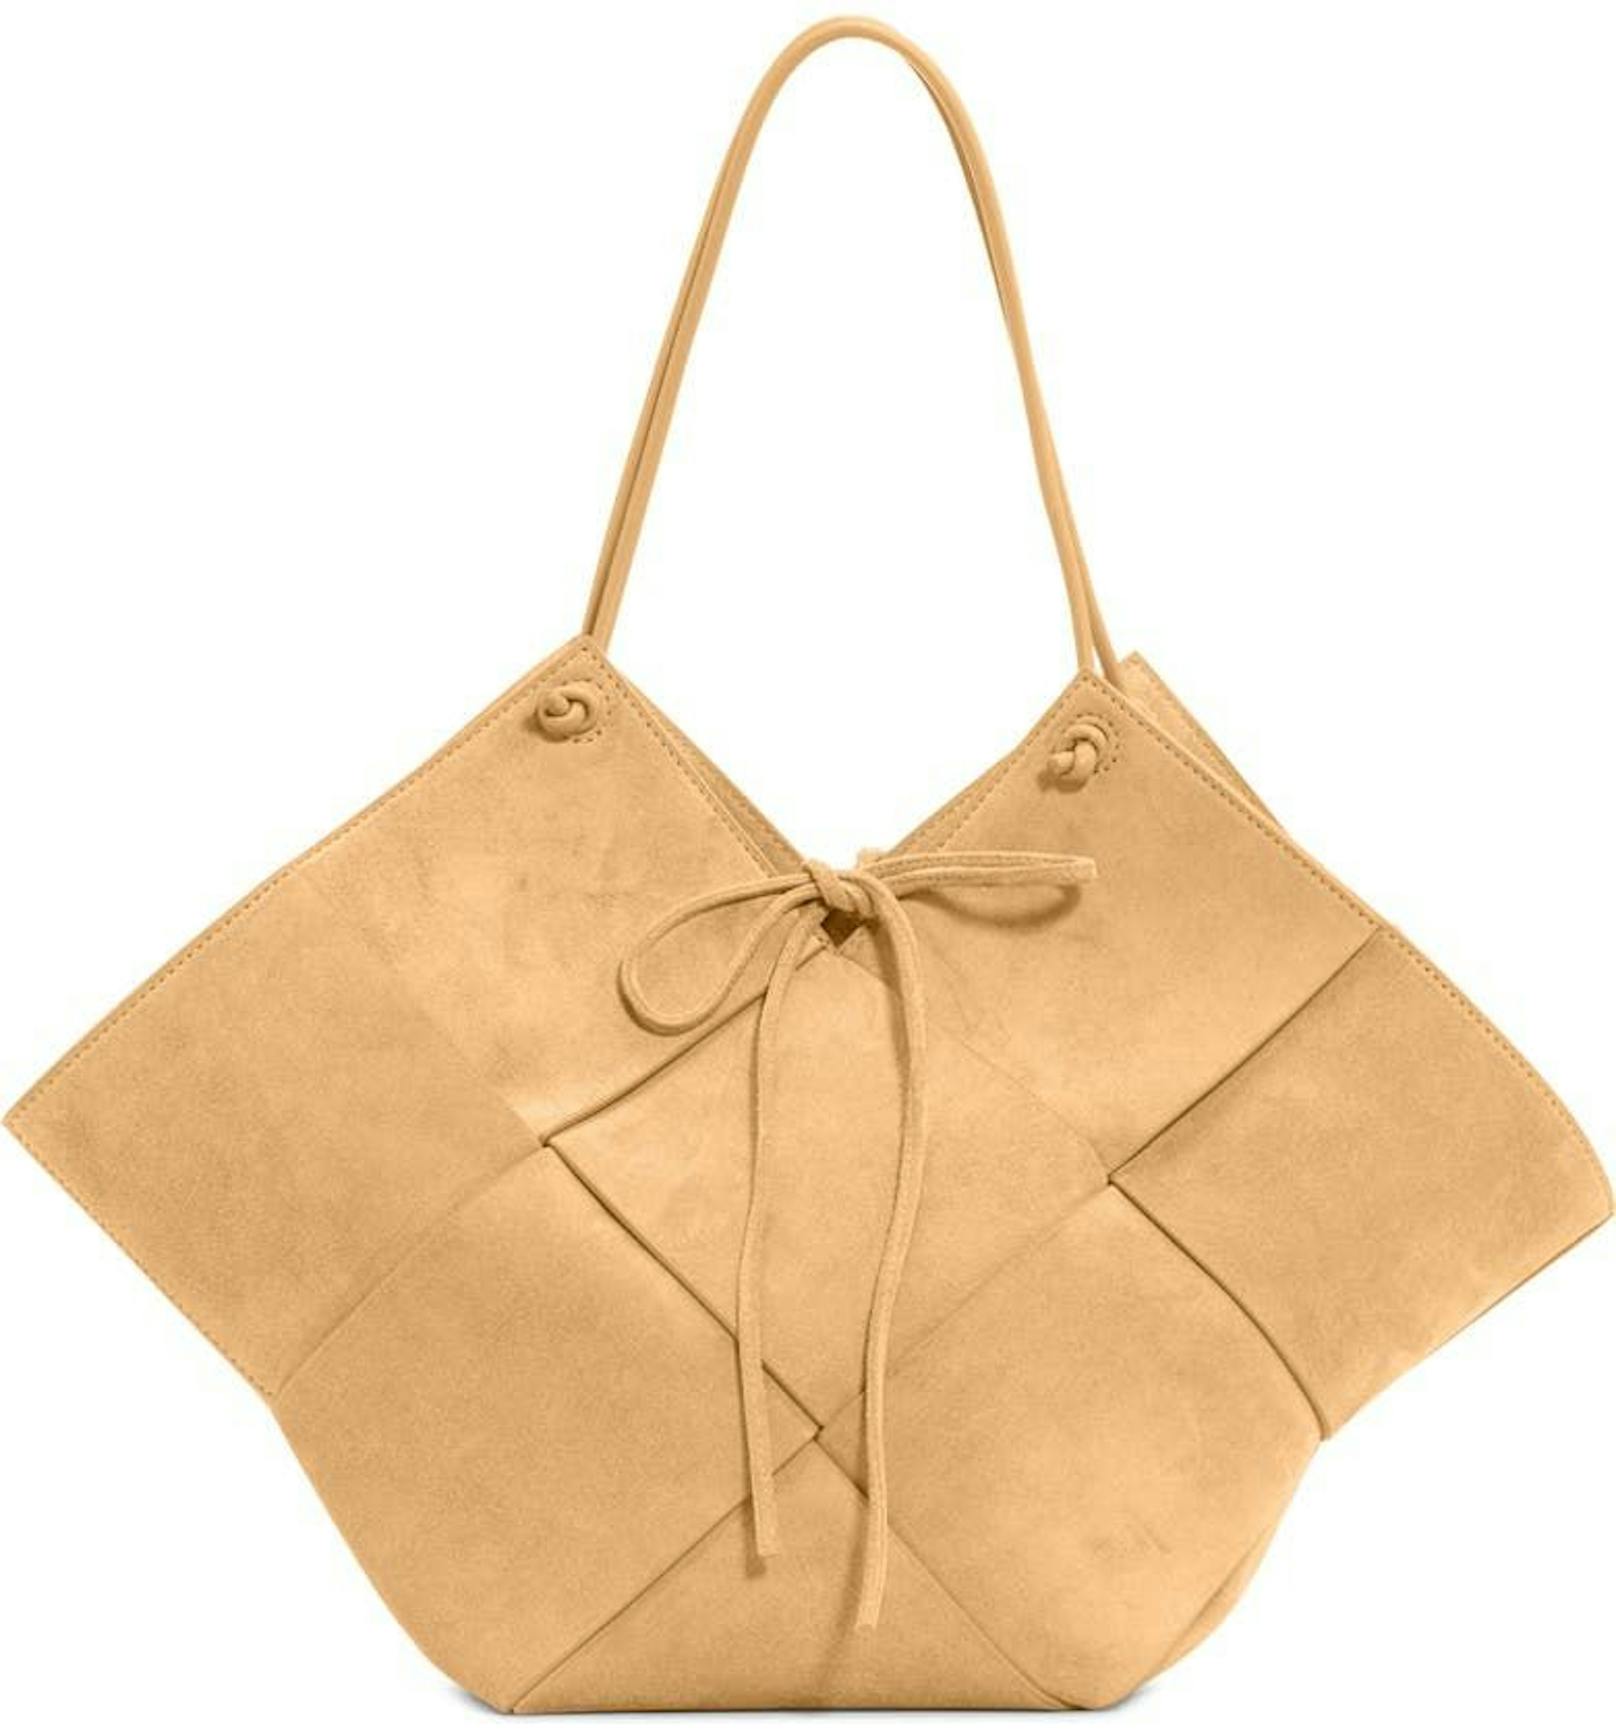 Eine klassische Bottega Veneta mit einem Twist sollte in deiner Taschenkollektion nicht fehlen. Diese goldene Velours-Tasche kann um ca. 1.800 Euro bestellt werden.